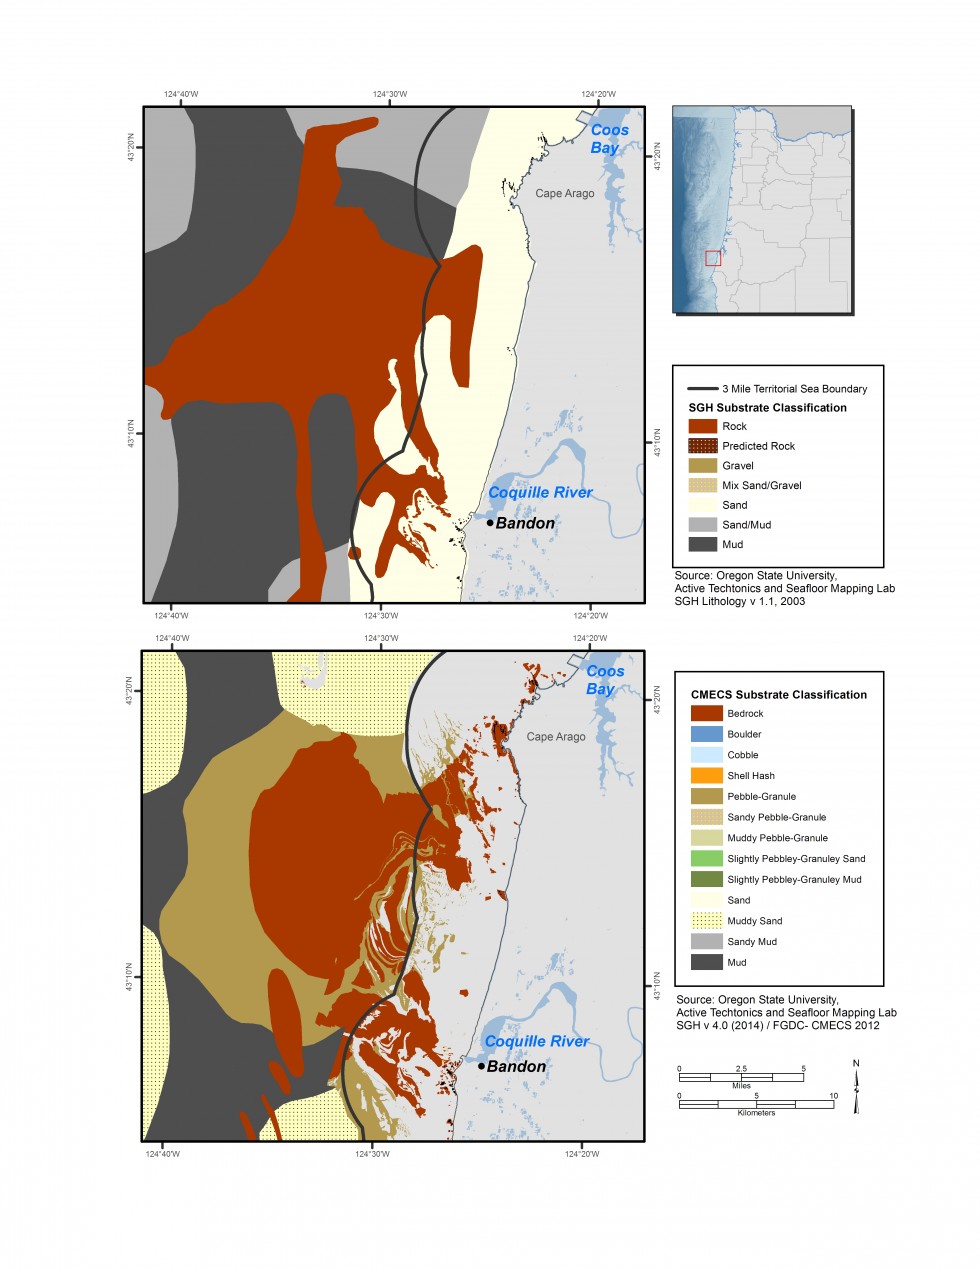 detalje af Cape Arago bund subtrate kort til rådighed i 2005 og 2015